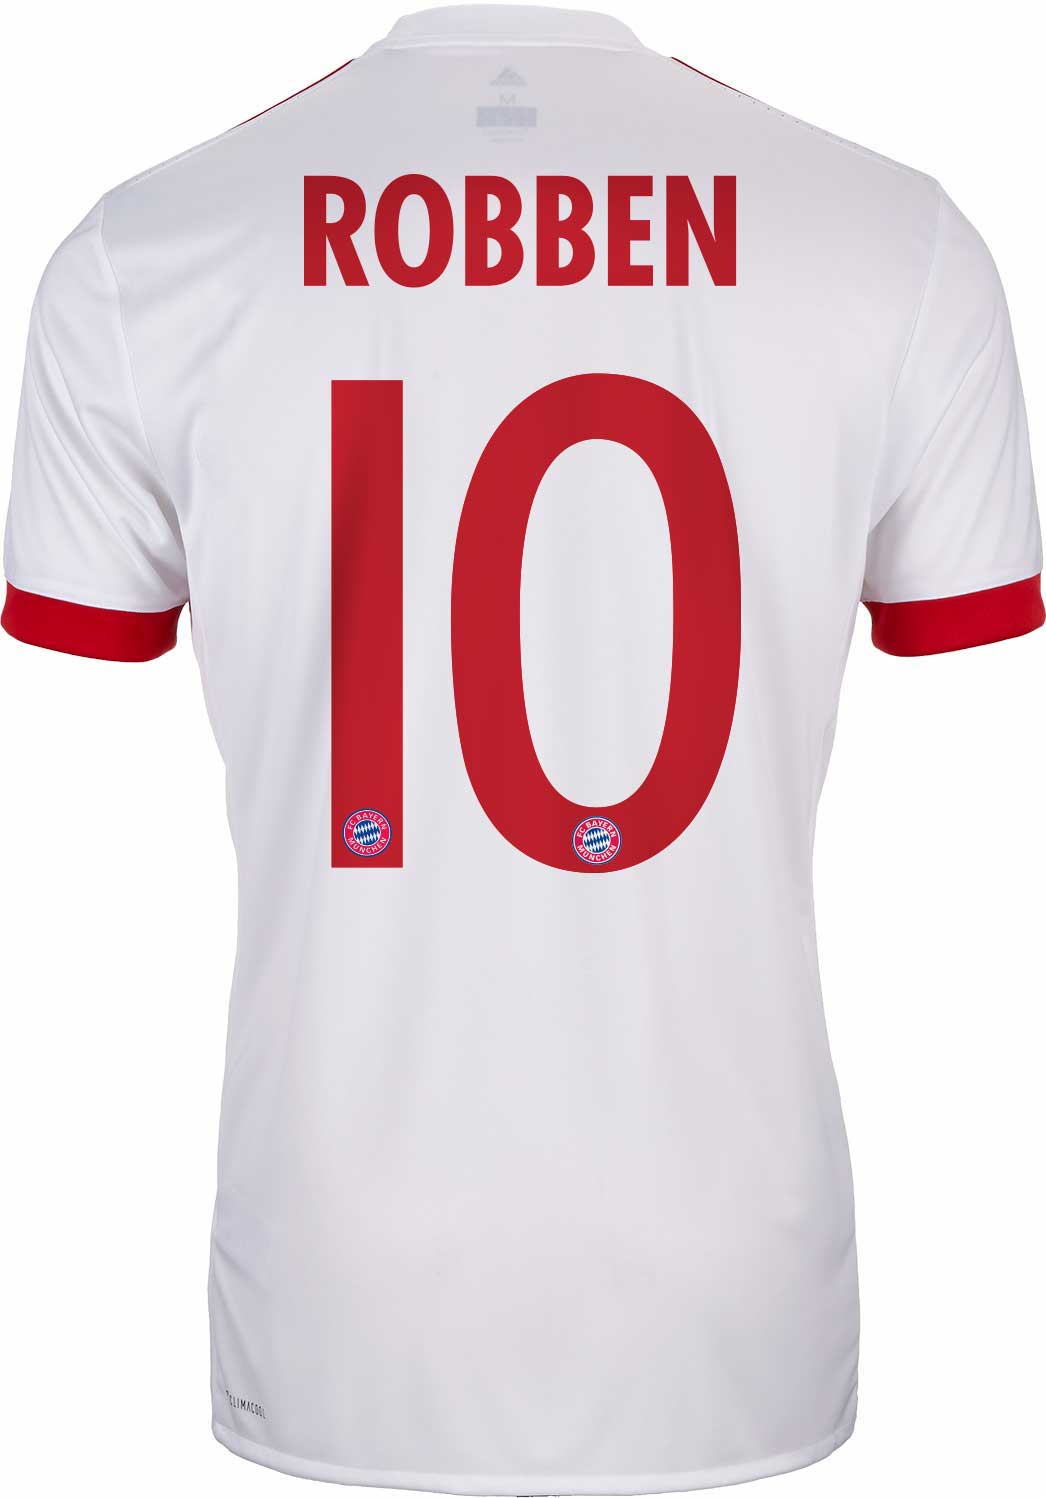 plastic Trots Zuidwest 2017/18 adidas Kids Arjen Robben Bayern Munich UCL Jersey - SoccerPro